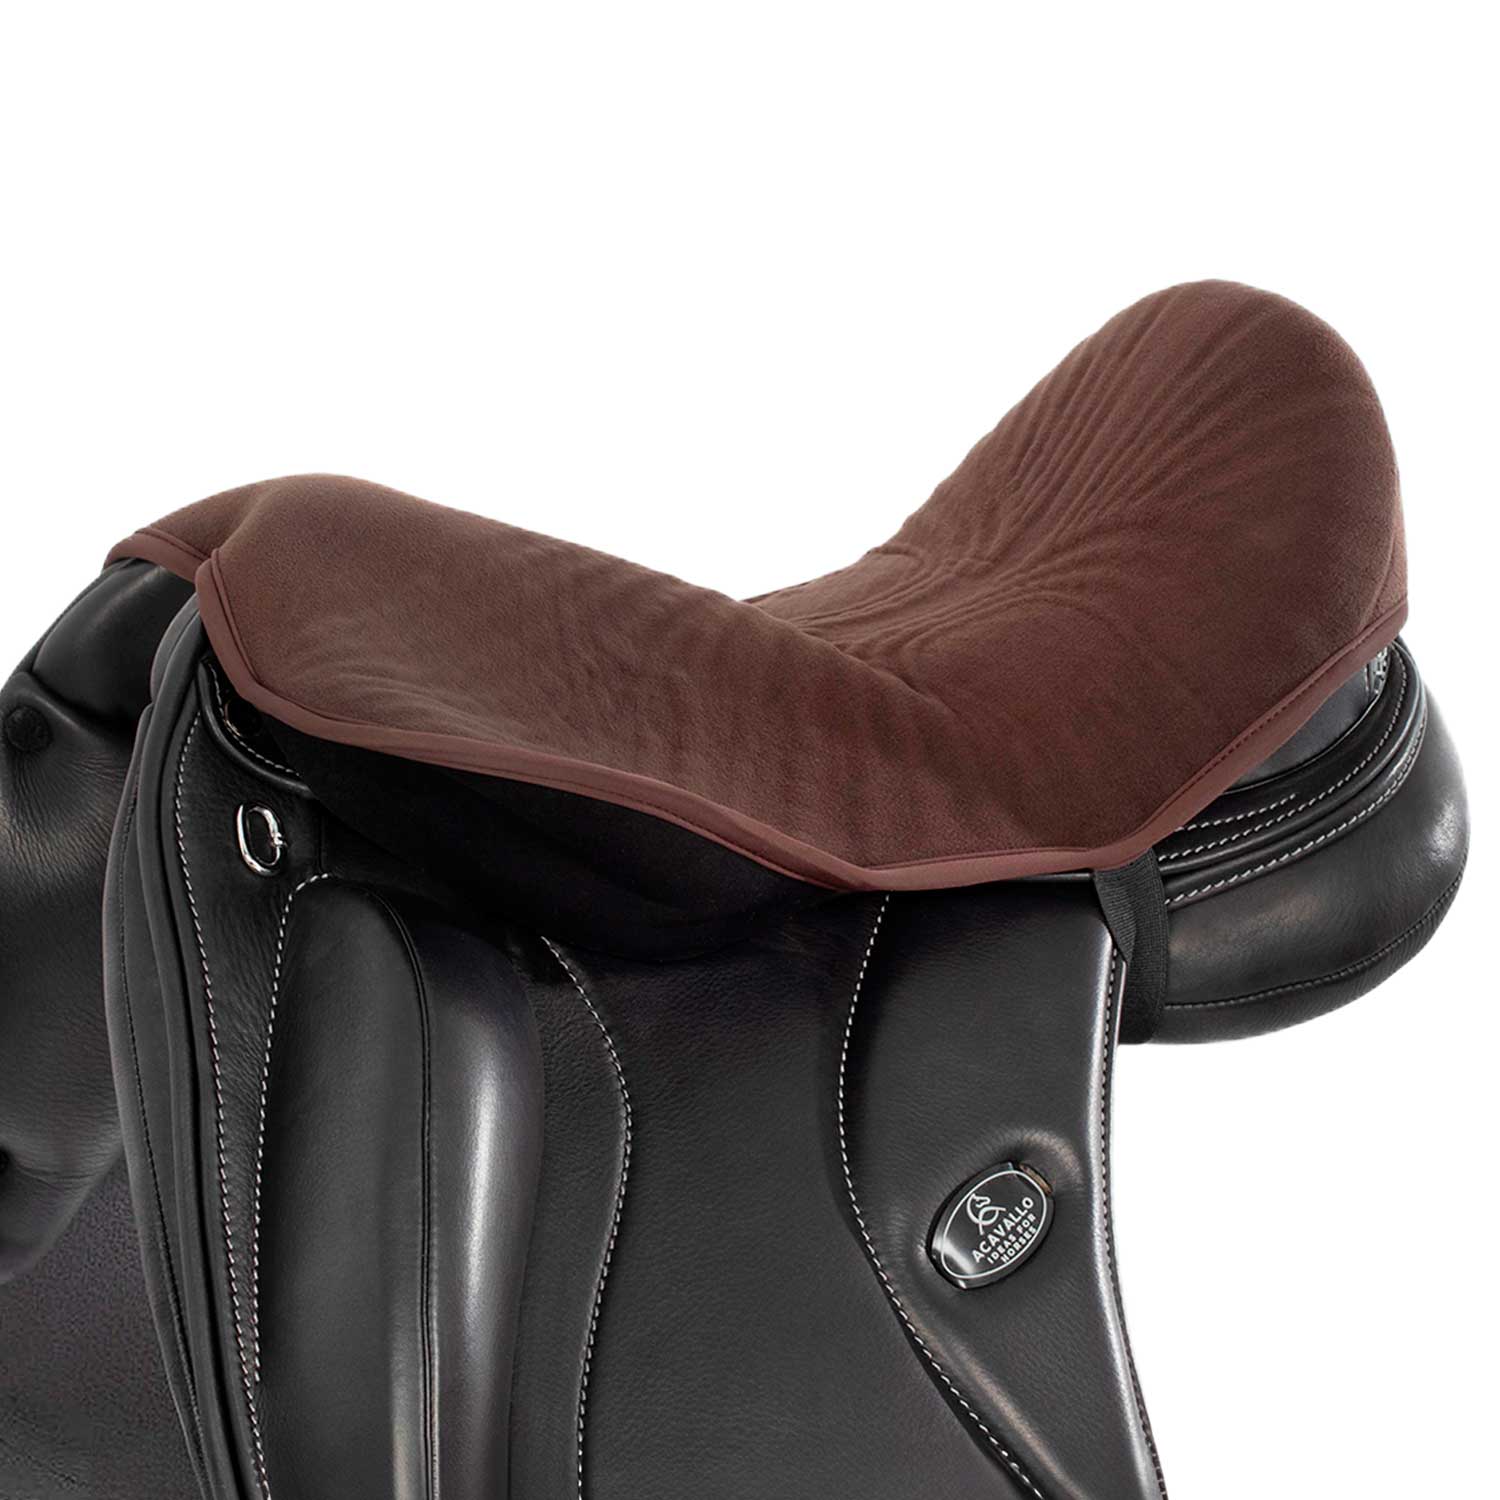 Sitz Bezug Dressage seat saver Dri-lex 10mm Air Plus gel in - Reitstiefel Kandel - Dein Reitshop